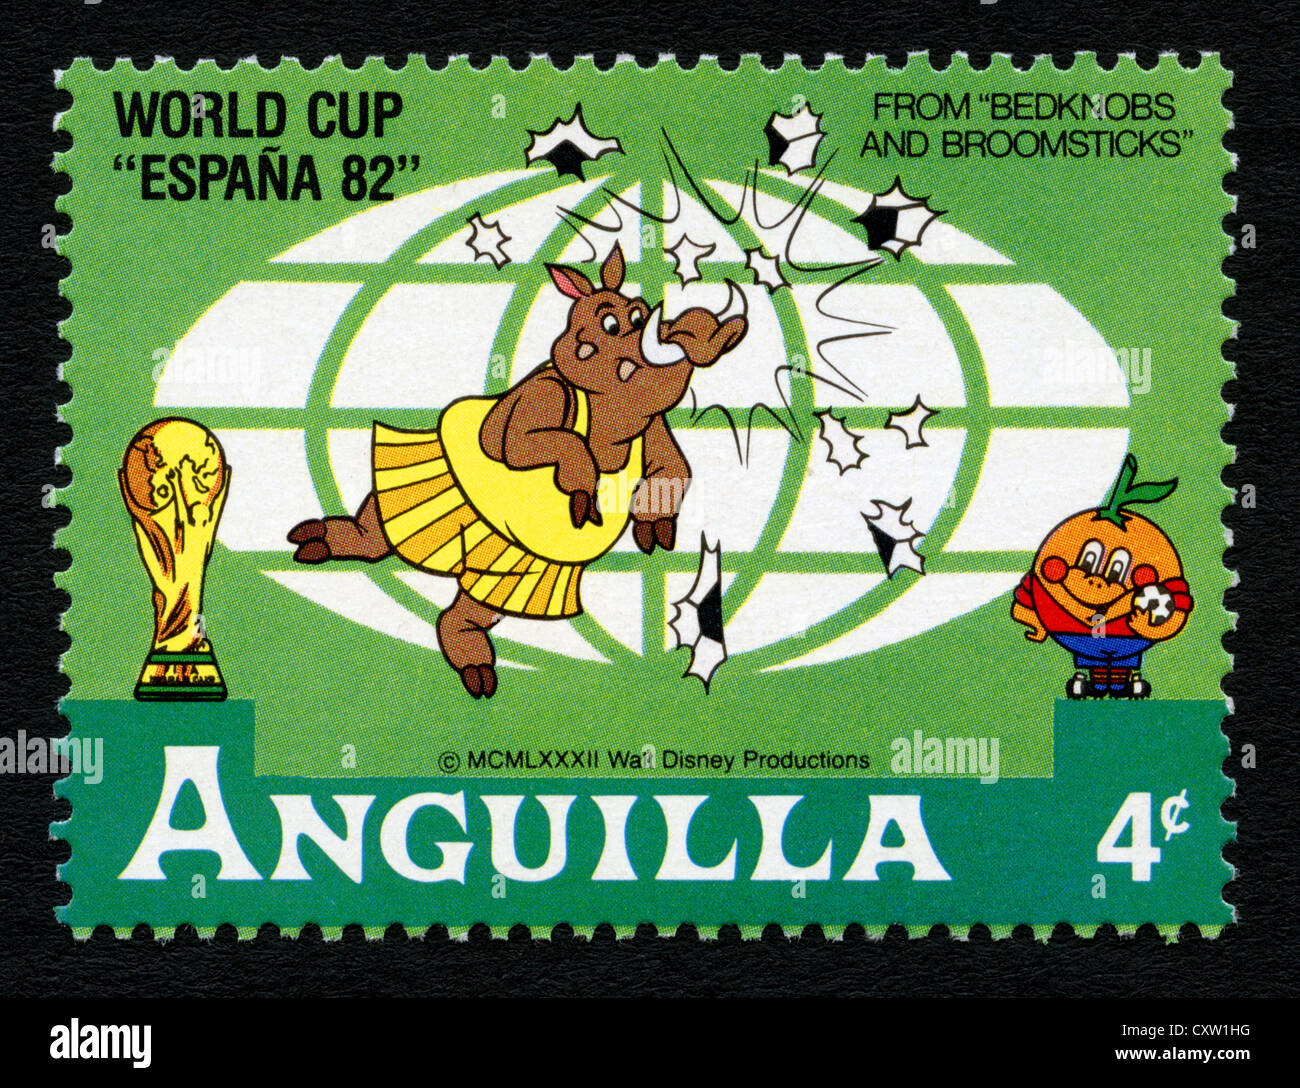 Anguilla - Timbres-poste de personnages de dessins animés Disney - Coupe du Monde Espana 82 Banque D'Images